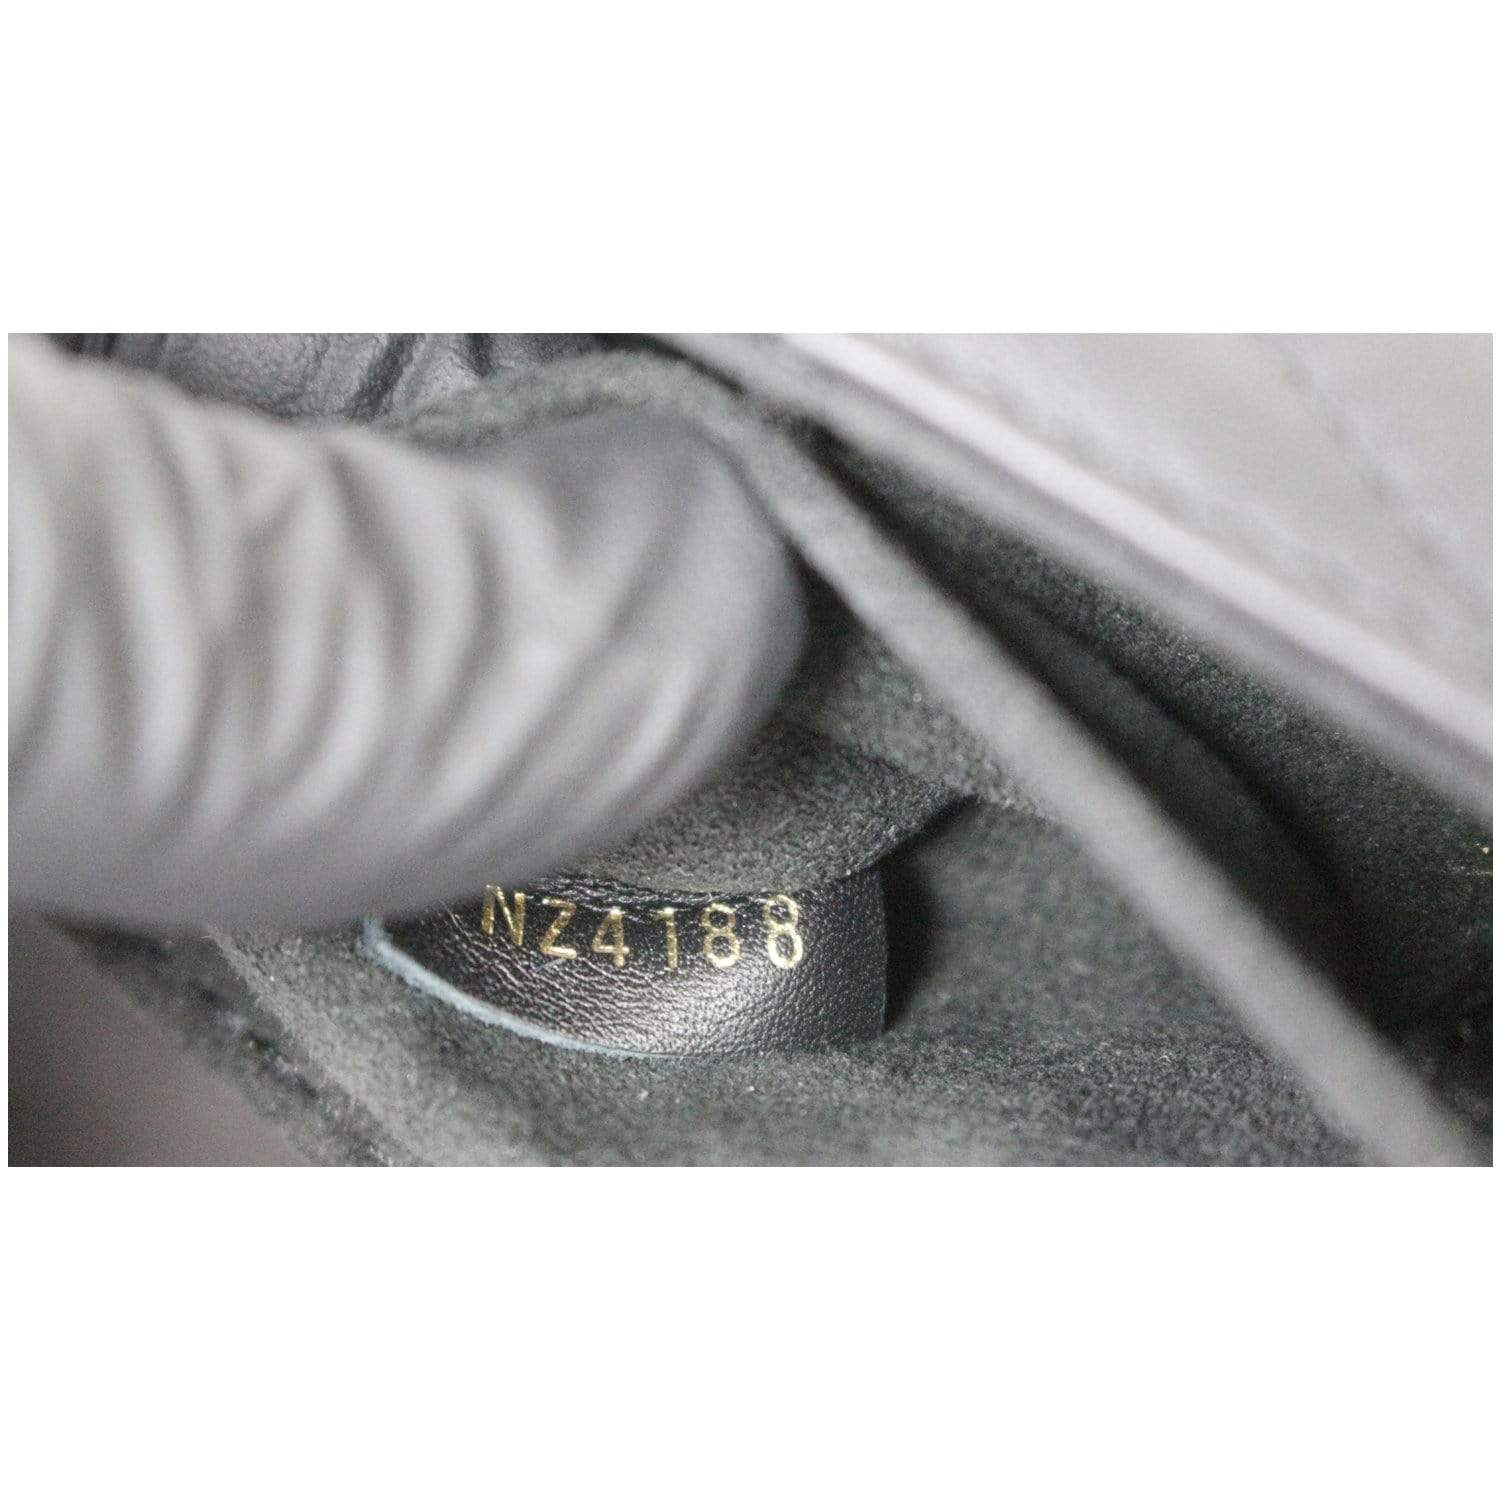 Louis Vuitton New Wave Chain PM - Black Shoulder Bags, Handbags - LOU795729